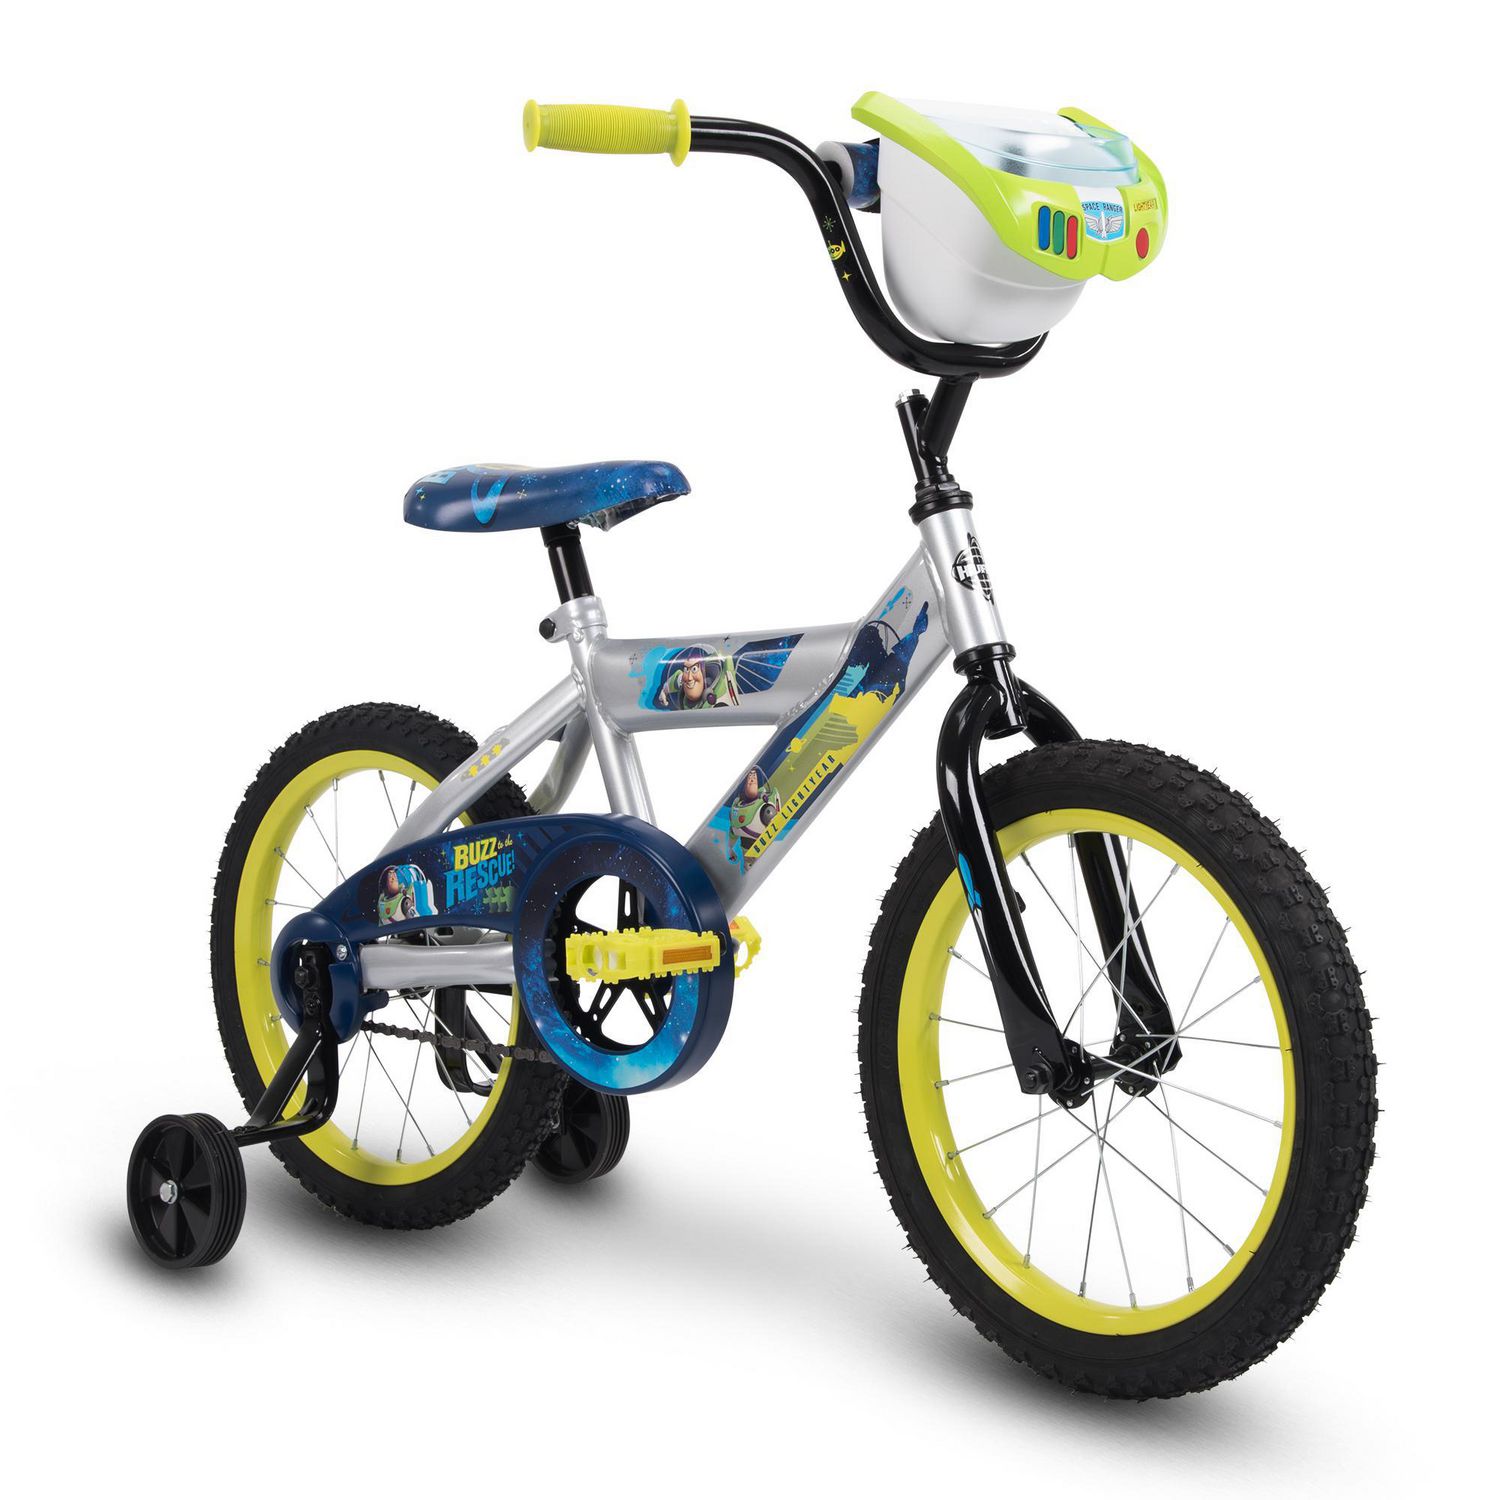 woody toy story bike